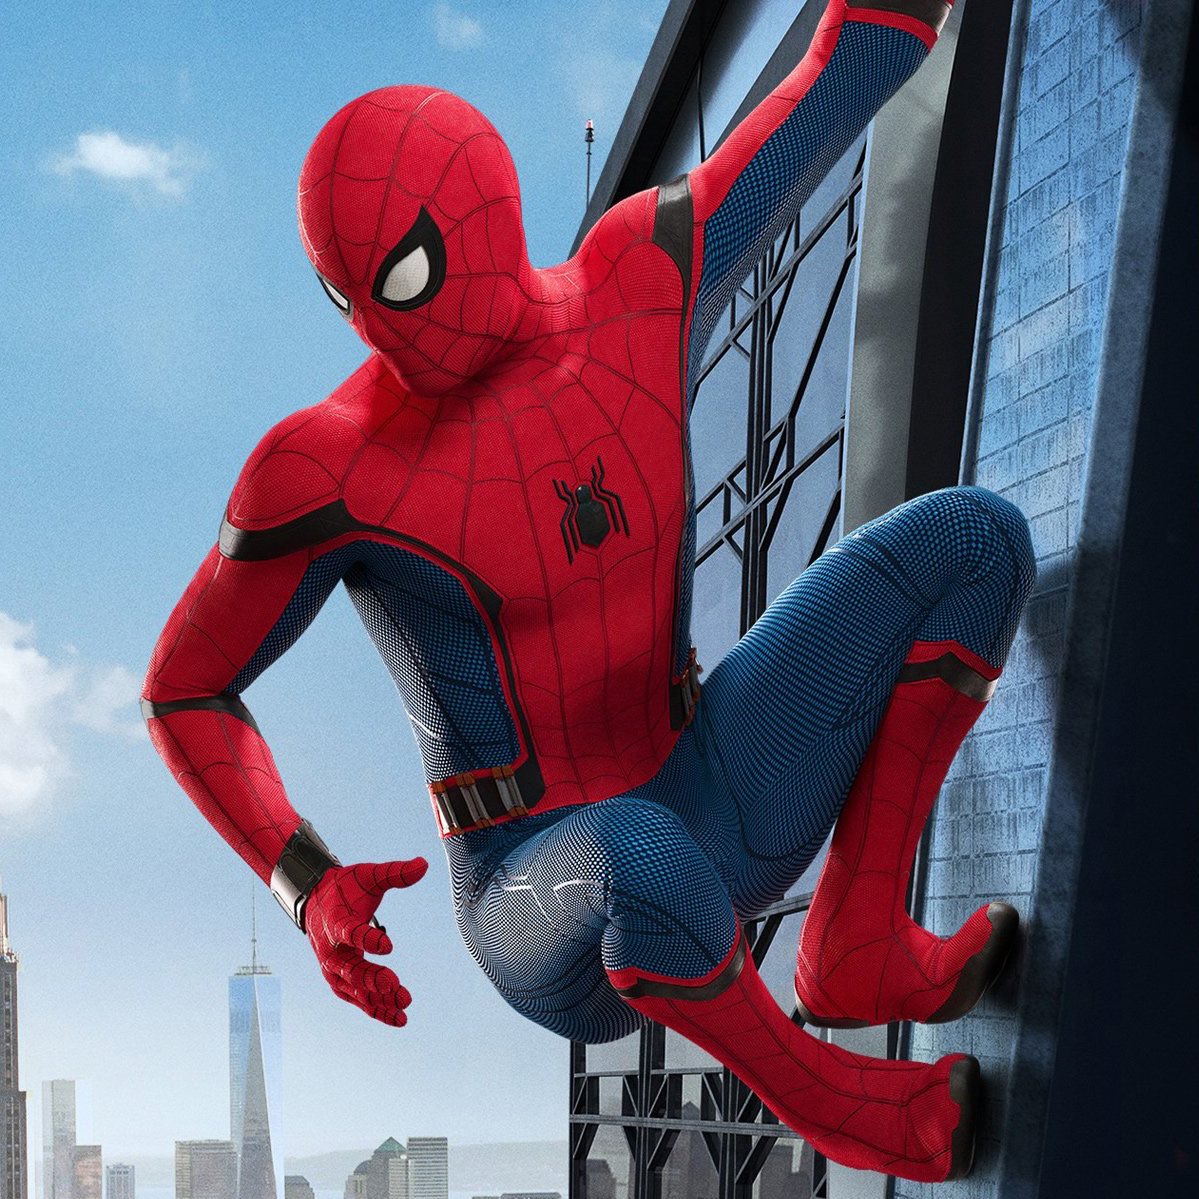 RT @MCUSource: BREAKING: #MarvelStudios & Sony’s SPIDER-MAN 4 has been officially confirmed to released next year! https://t.co/henCnwods9